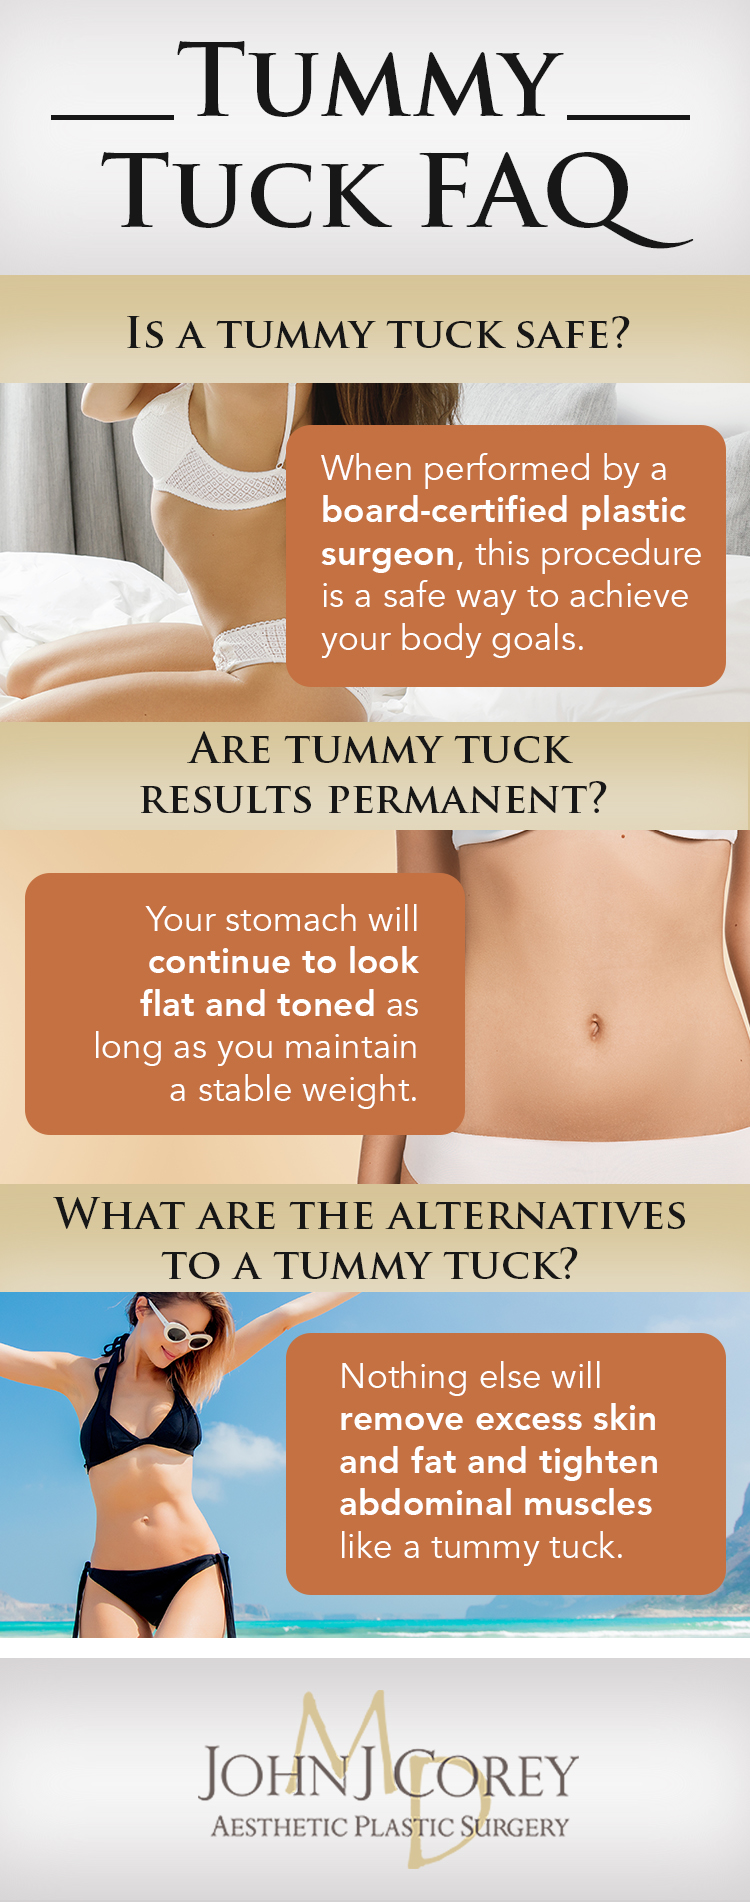 Tummy Tuck (Abdominoplasty) in Scottsdale, AZ